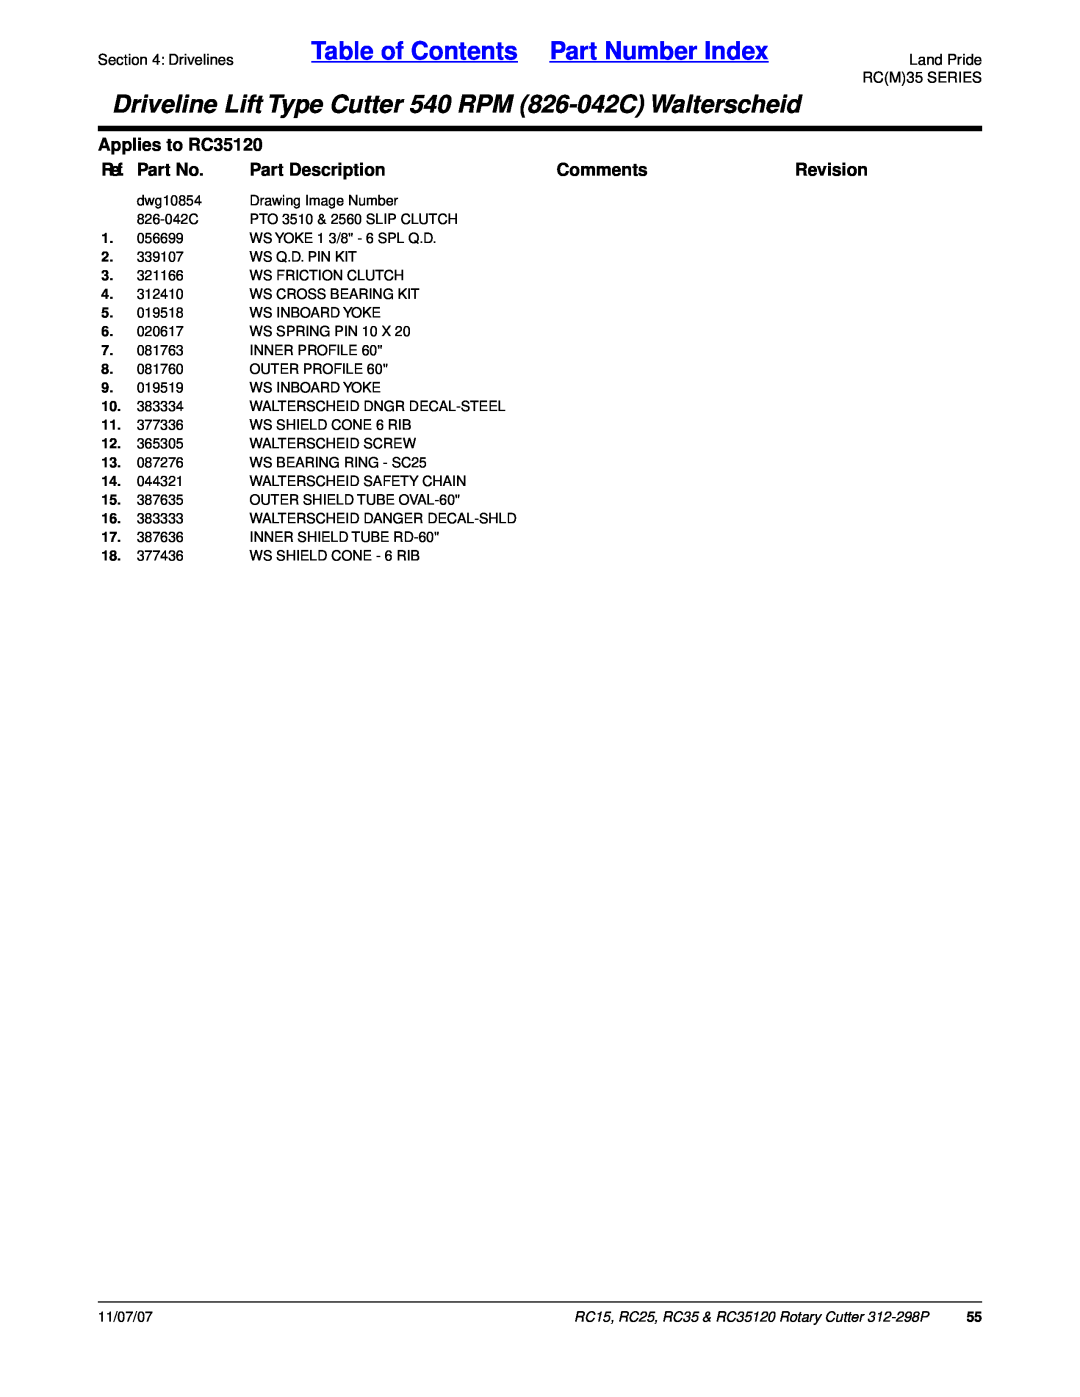 Land Pride RC15, RC25 Table of Contents Part Number Index, Applies to RC35120, Ref. Part No, Part Description, Comments 